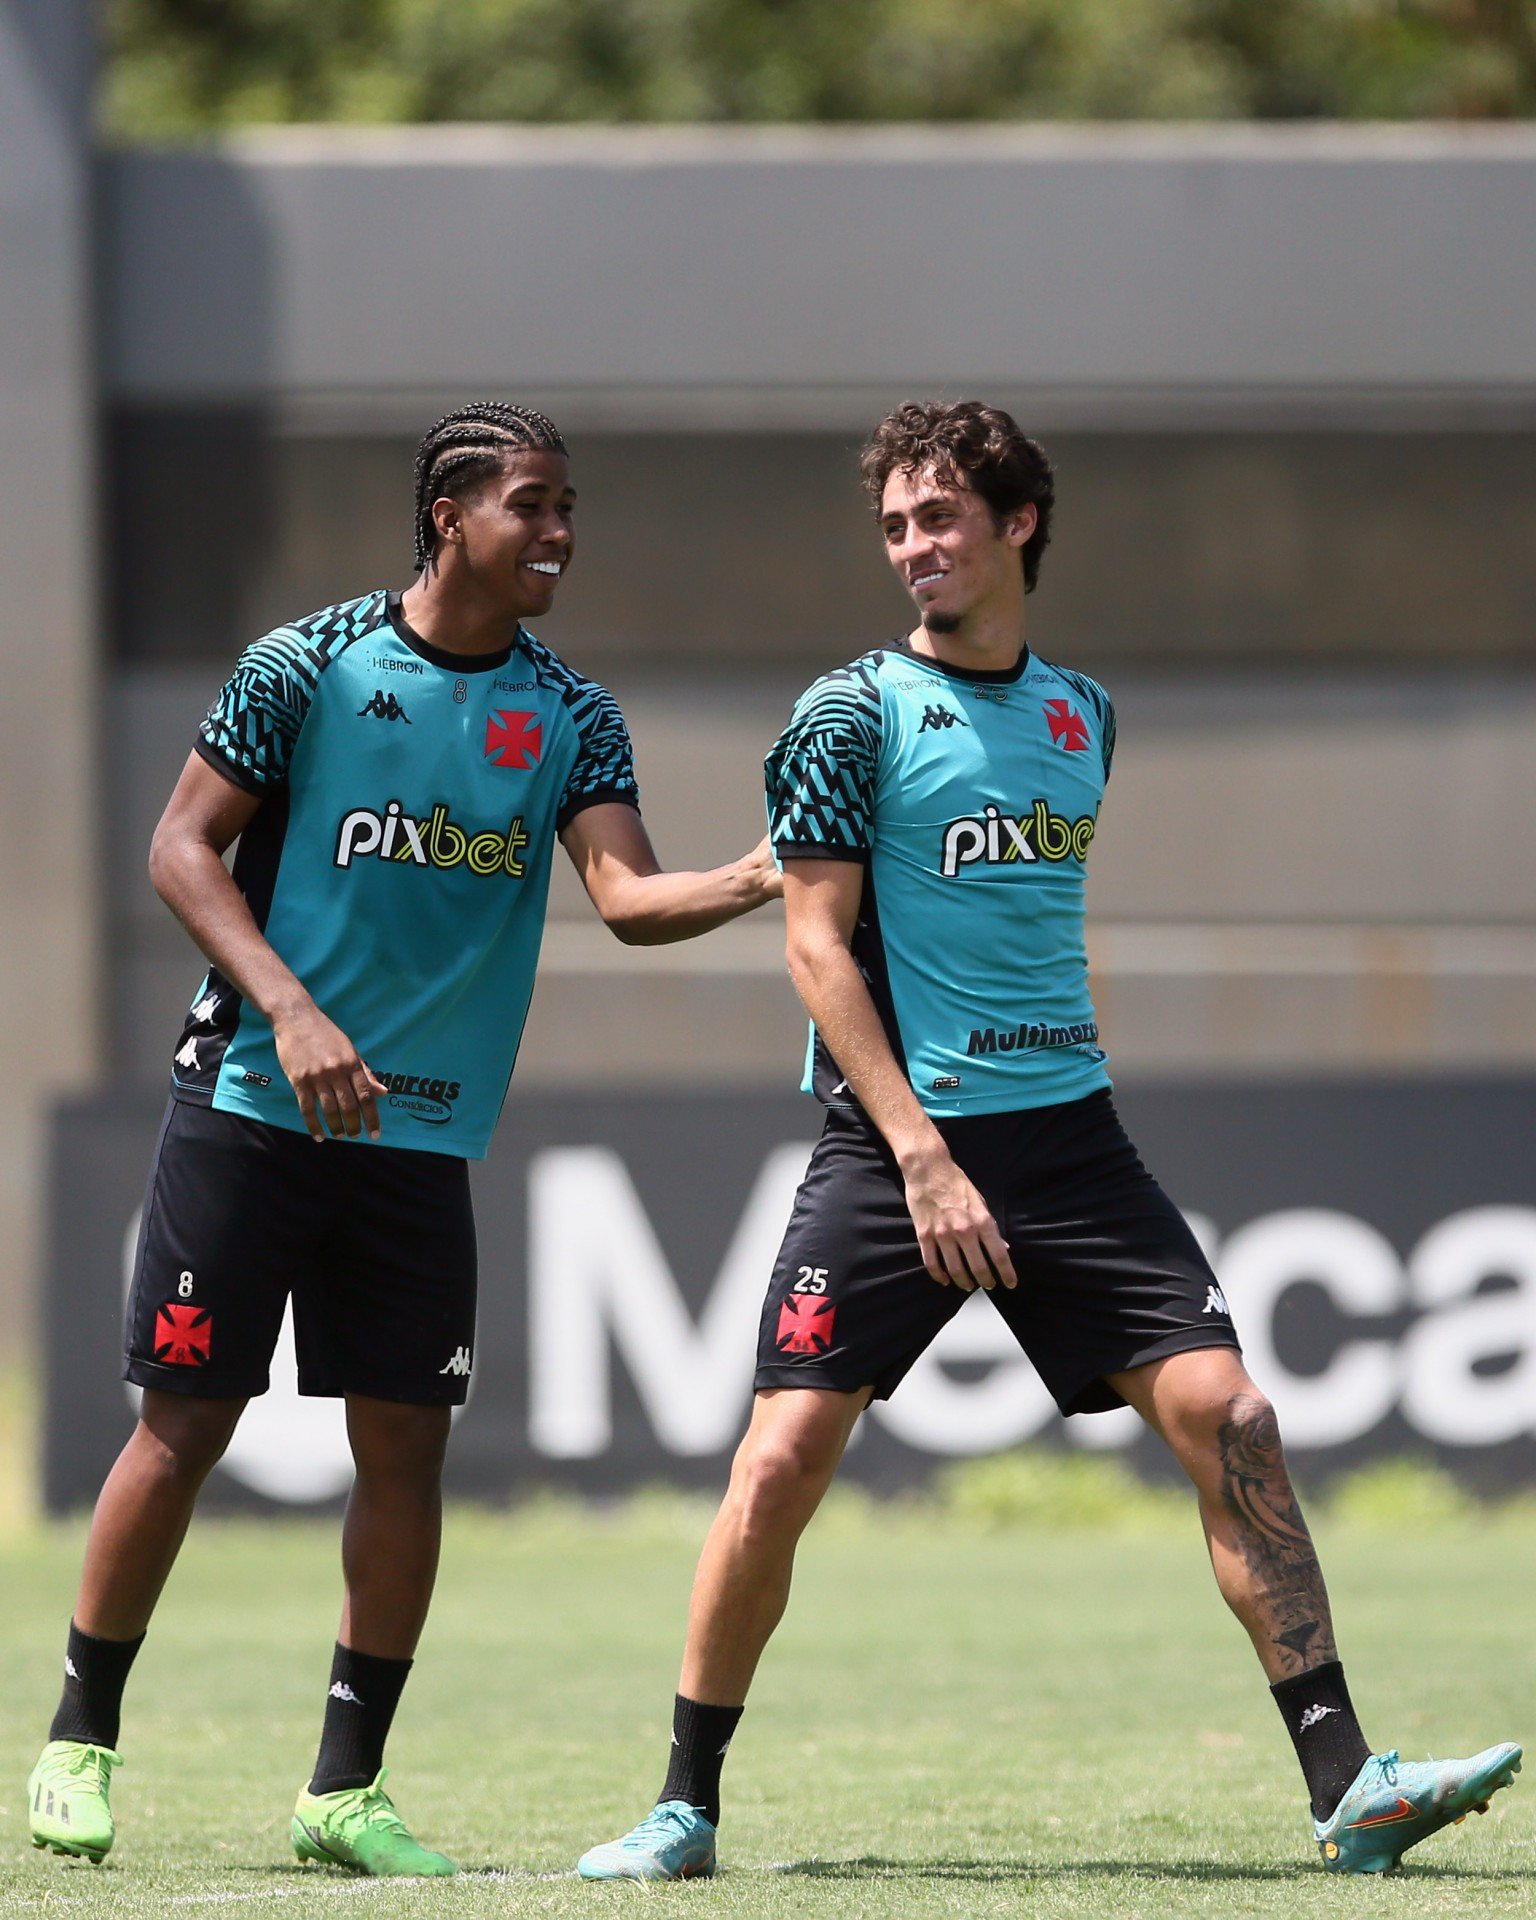 Andrey puxa a camisa de Marlon Gomes no treino do elenco de futebol profissional do Vasco da Gama no CT Moacyr Barbosa em 19 de setembro de 2022 - Daniel RAMALHO/VASCO